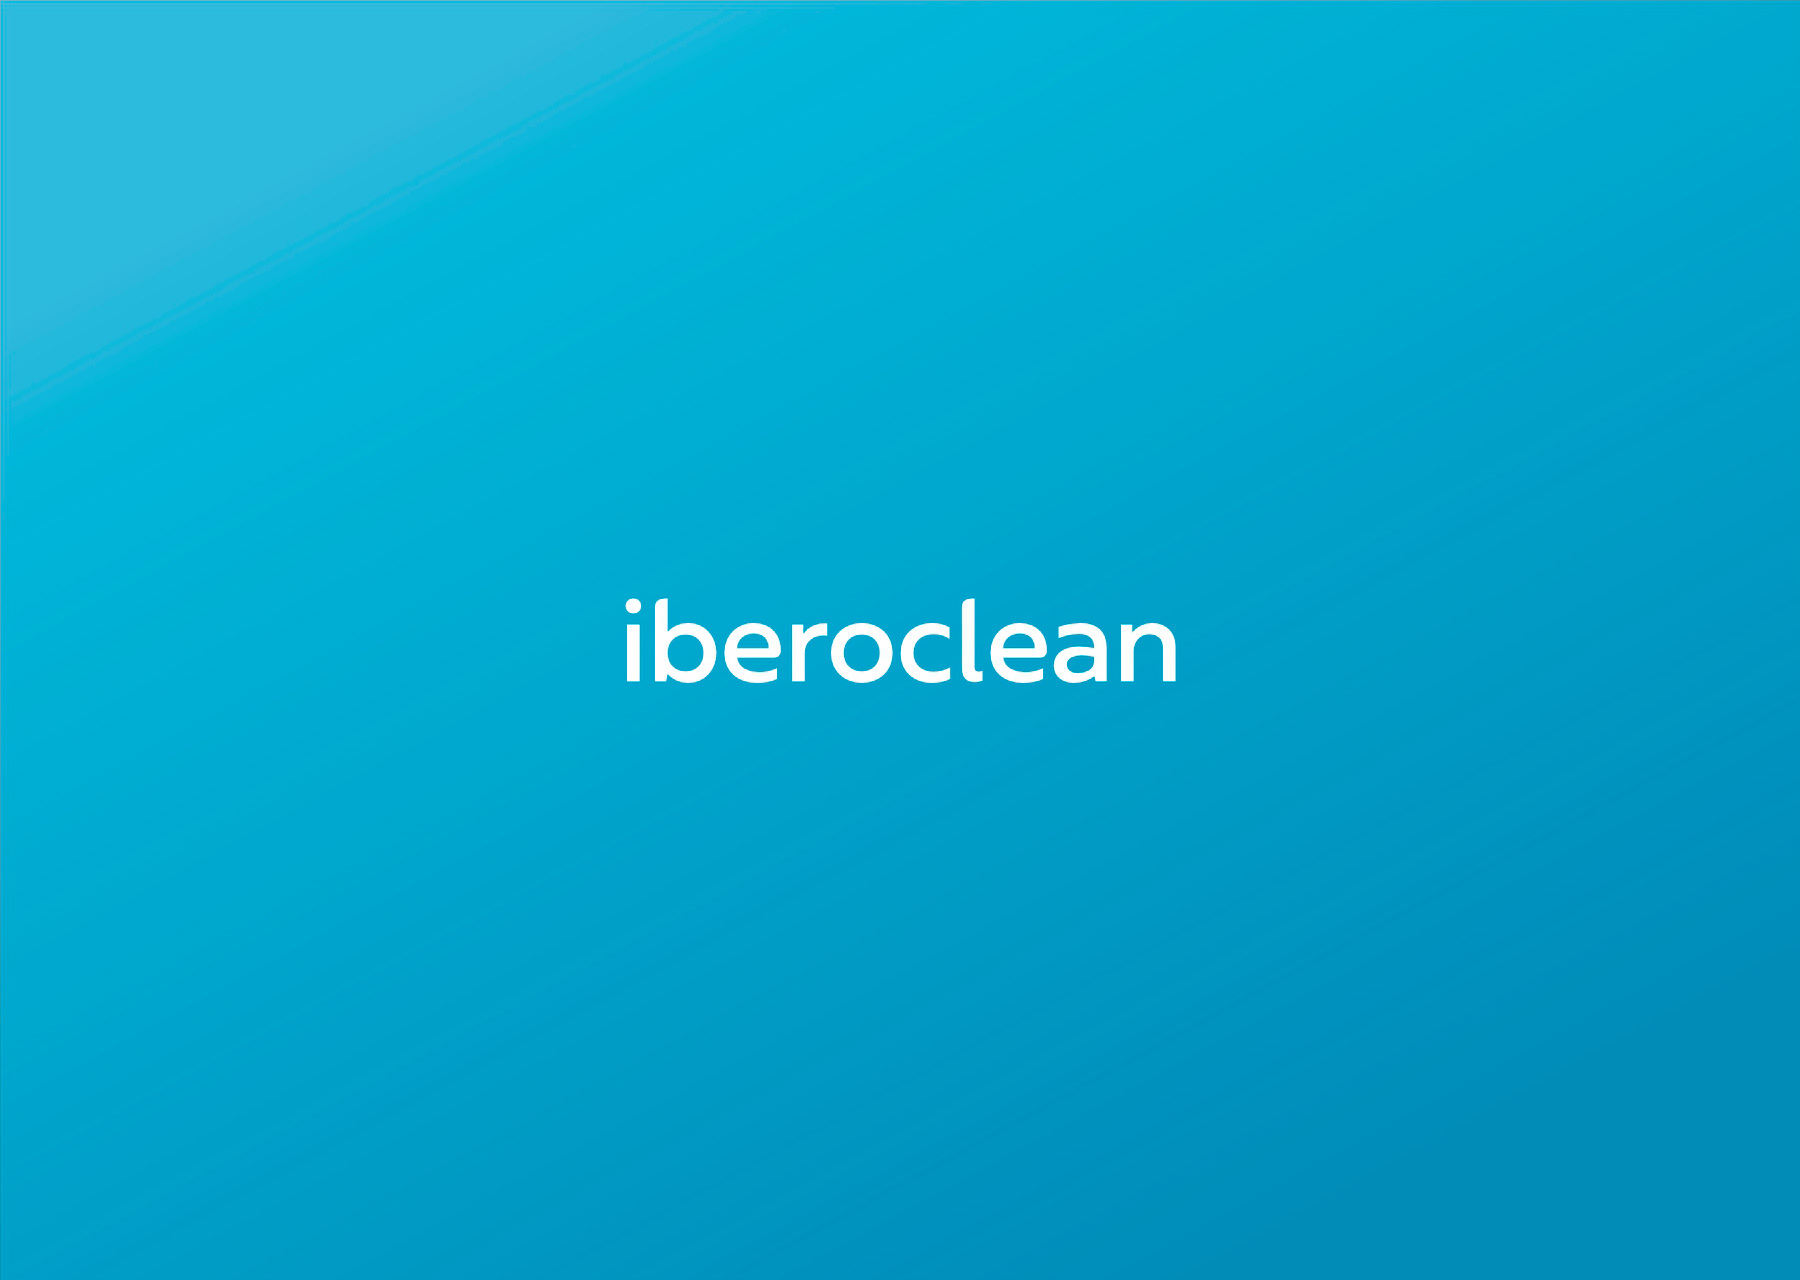 Iberoclean servicios de limpieza - javier real